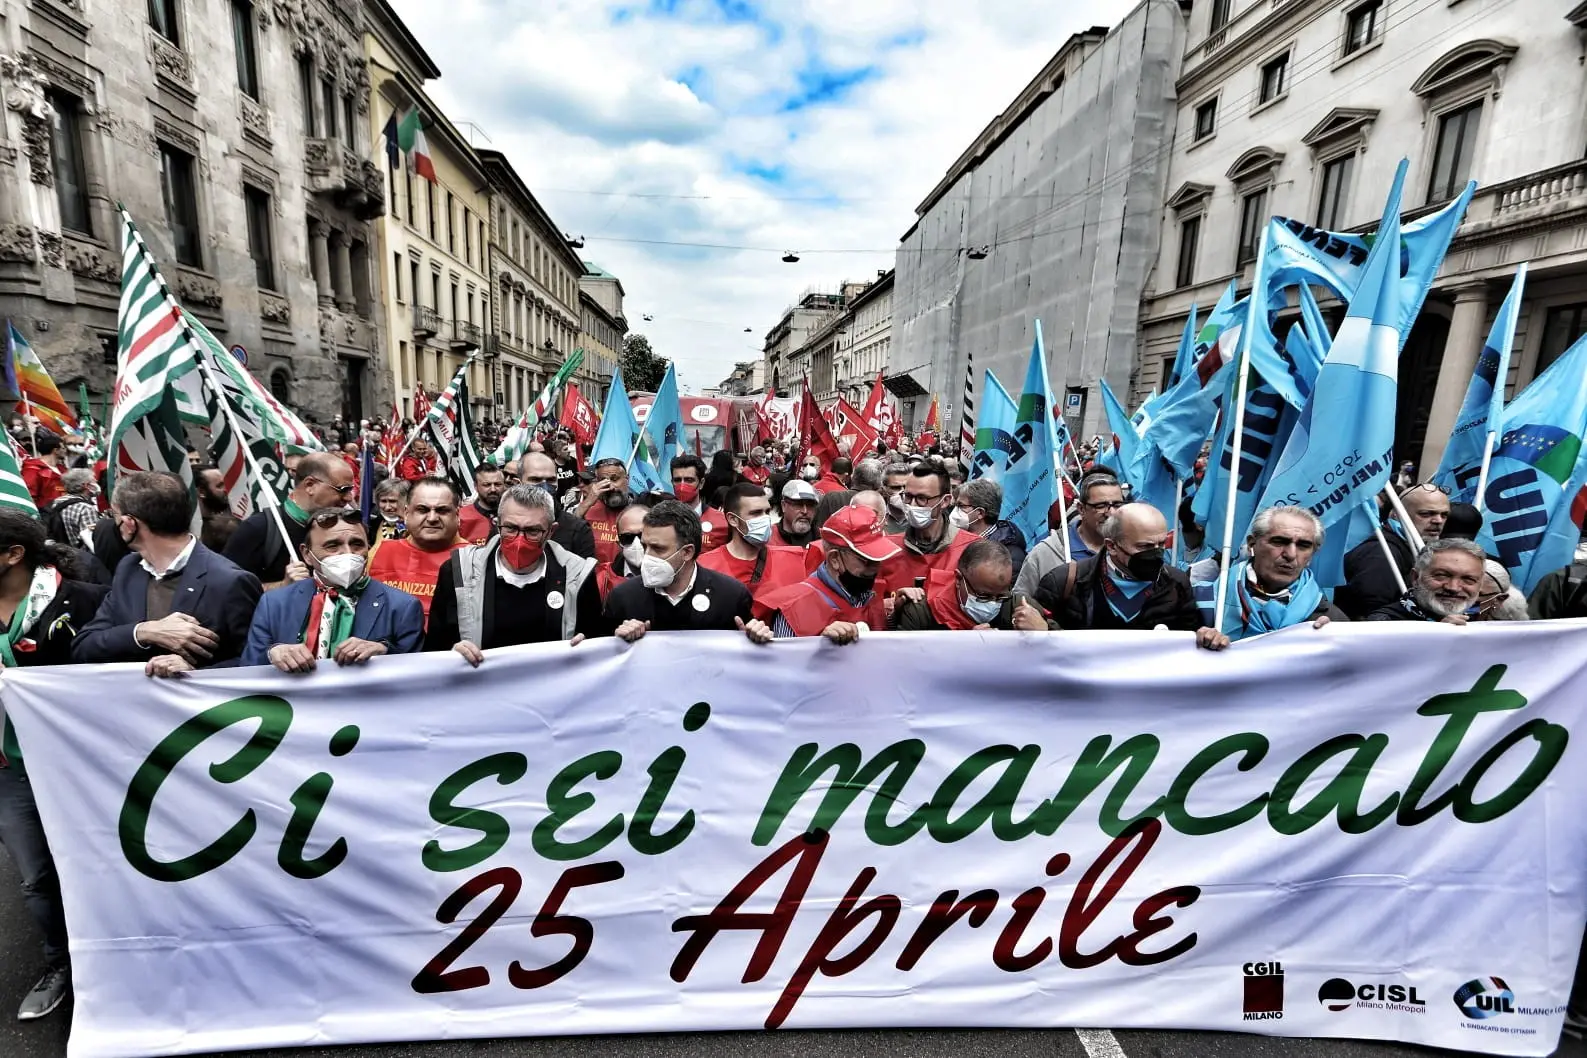 25 aprile 2022 per la Pace: a Milano manifestazione nazionale, interviene Maurizio Landini